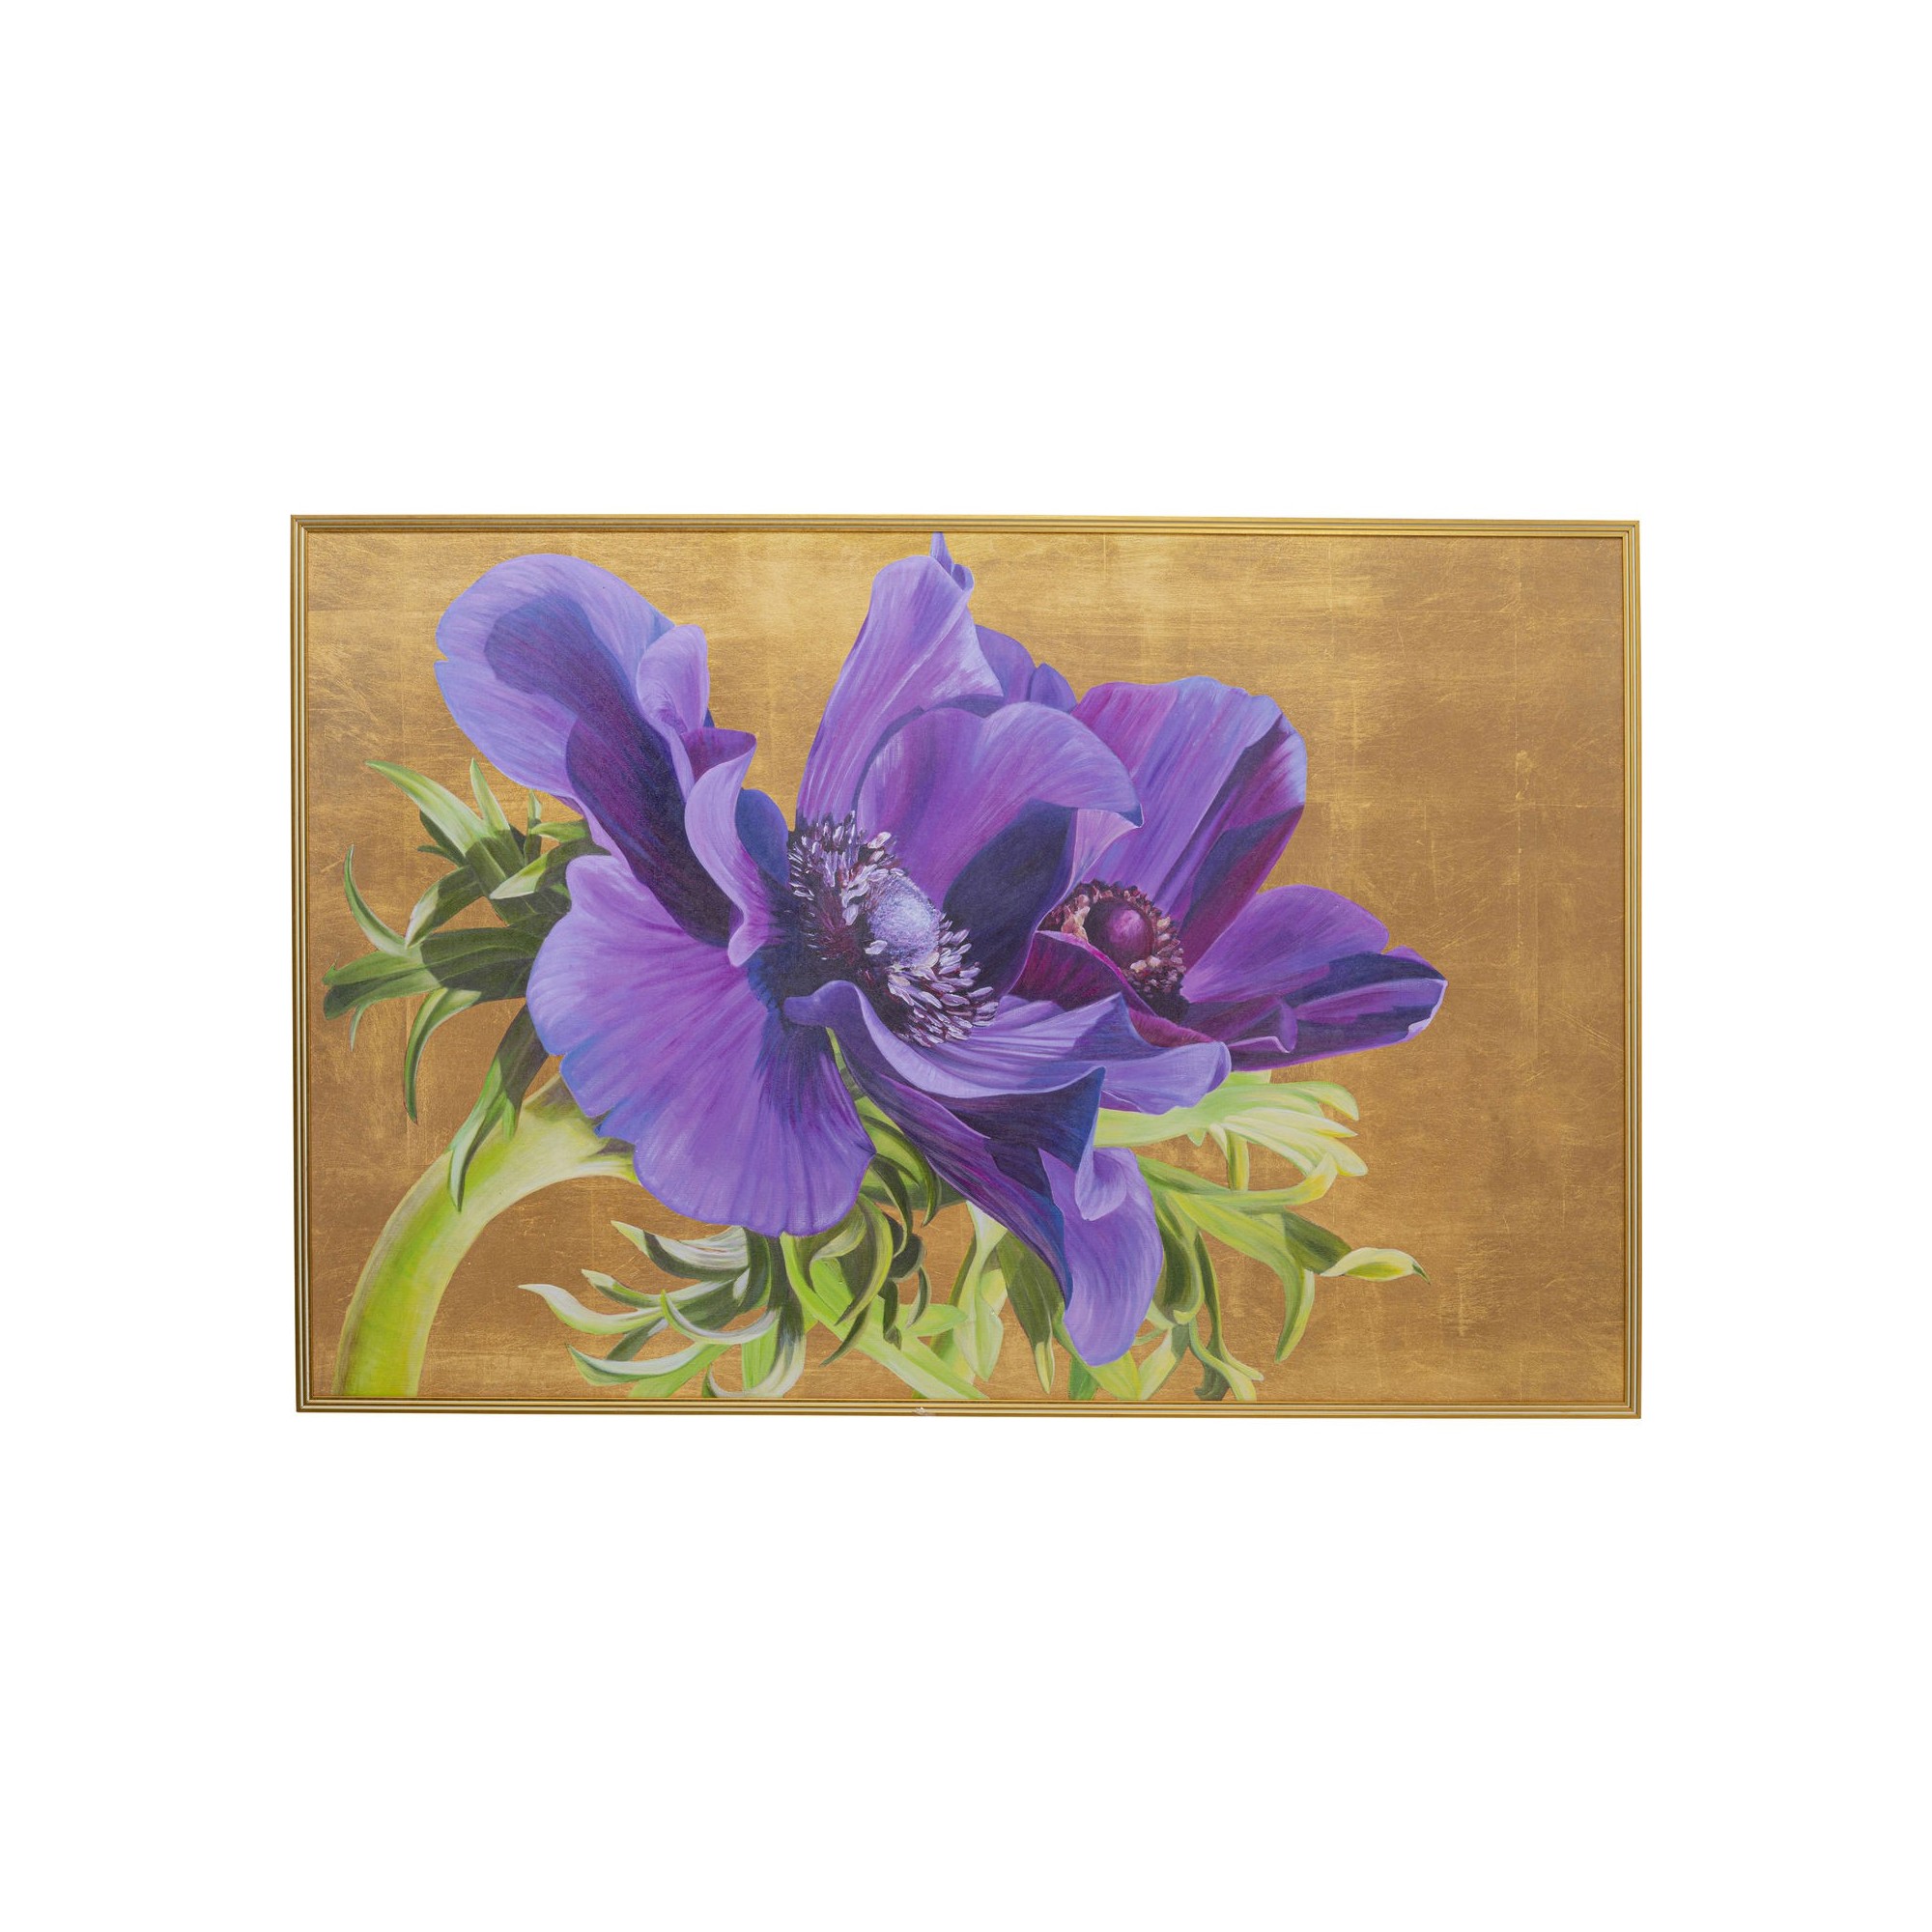 Tableau encadré fleurs violet 100x150cm Kare Design